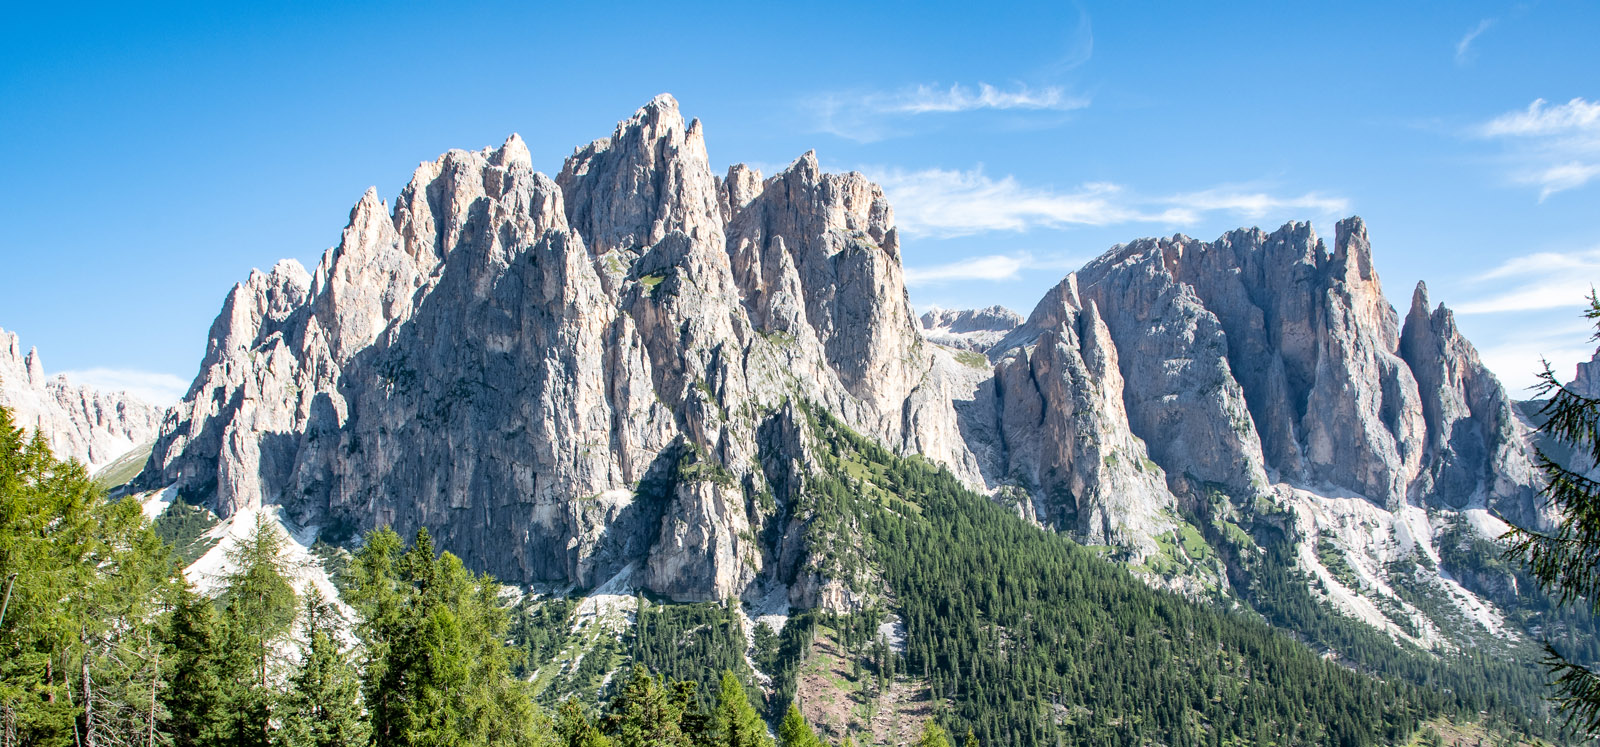 Dolomite panorama of the Catinaccio-Rosengarten group.